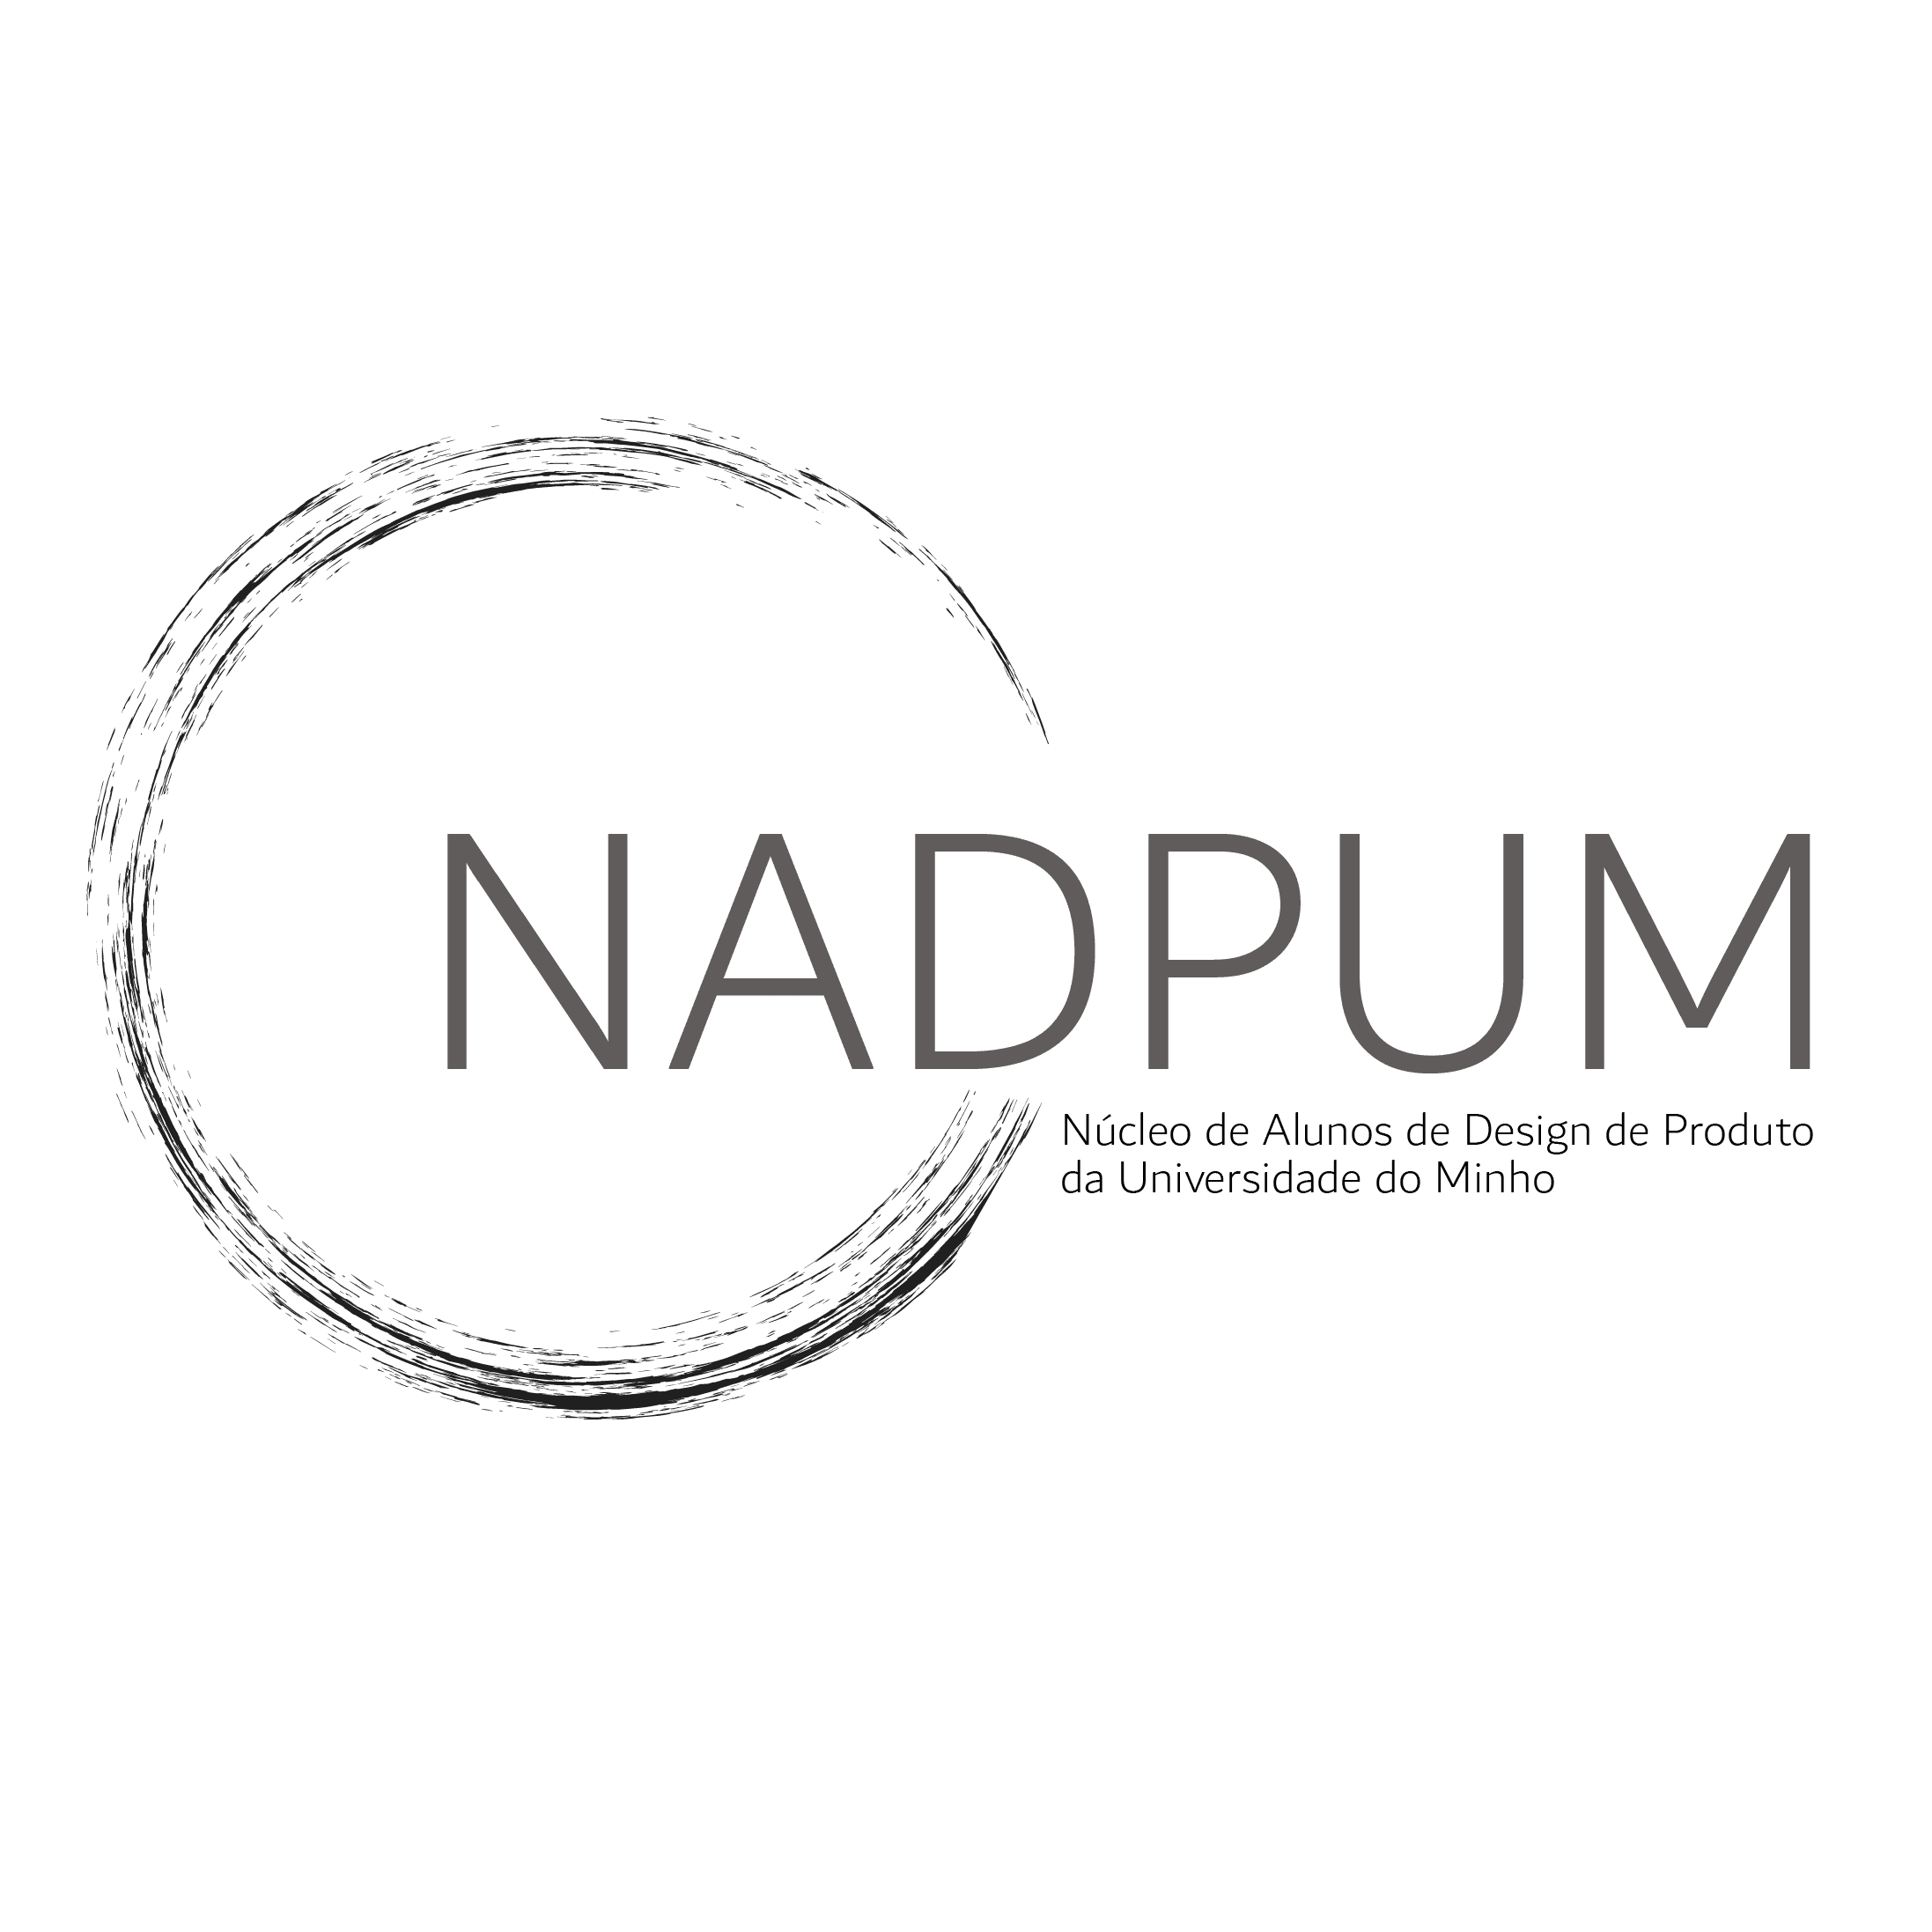 NADPUM logo